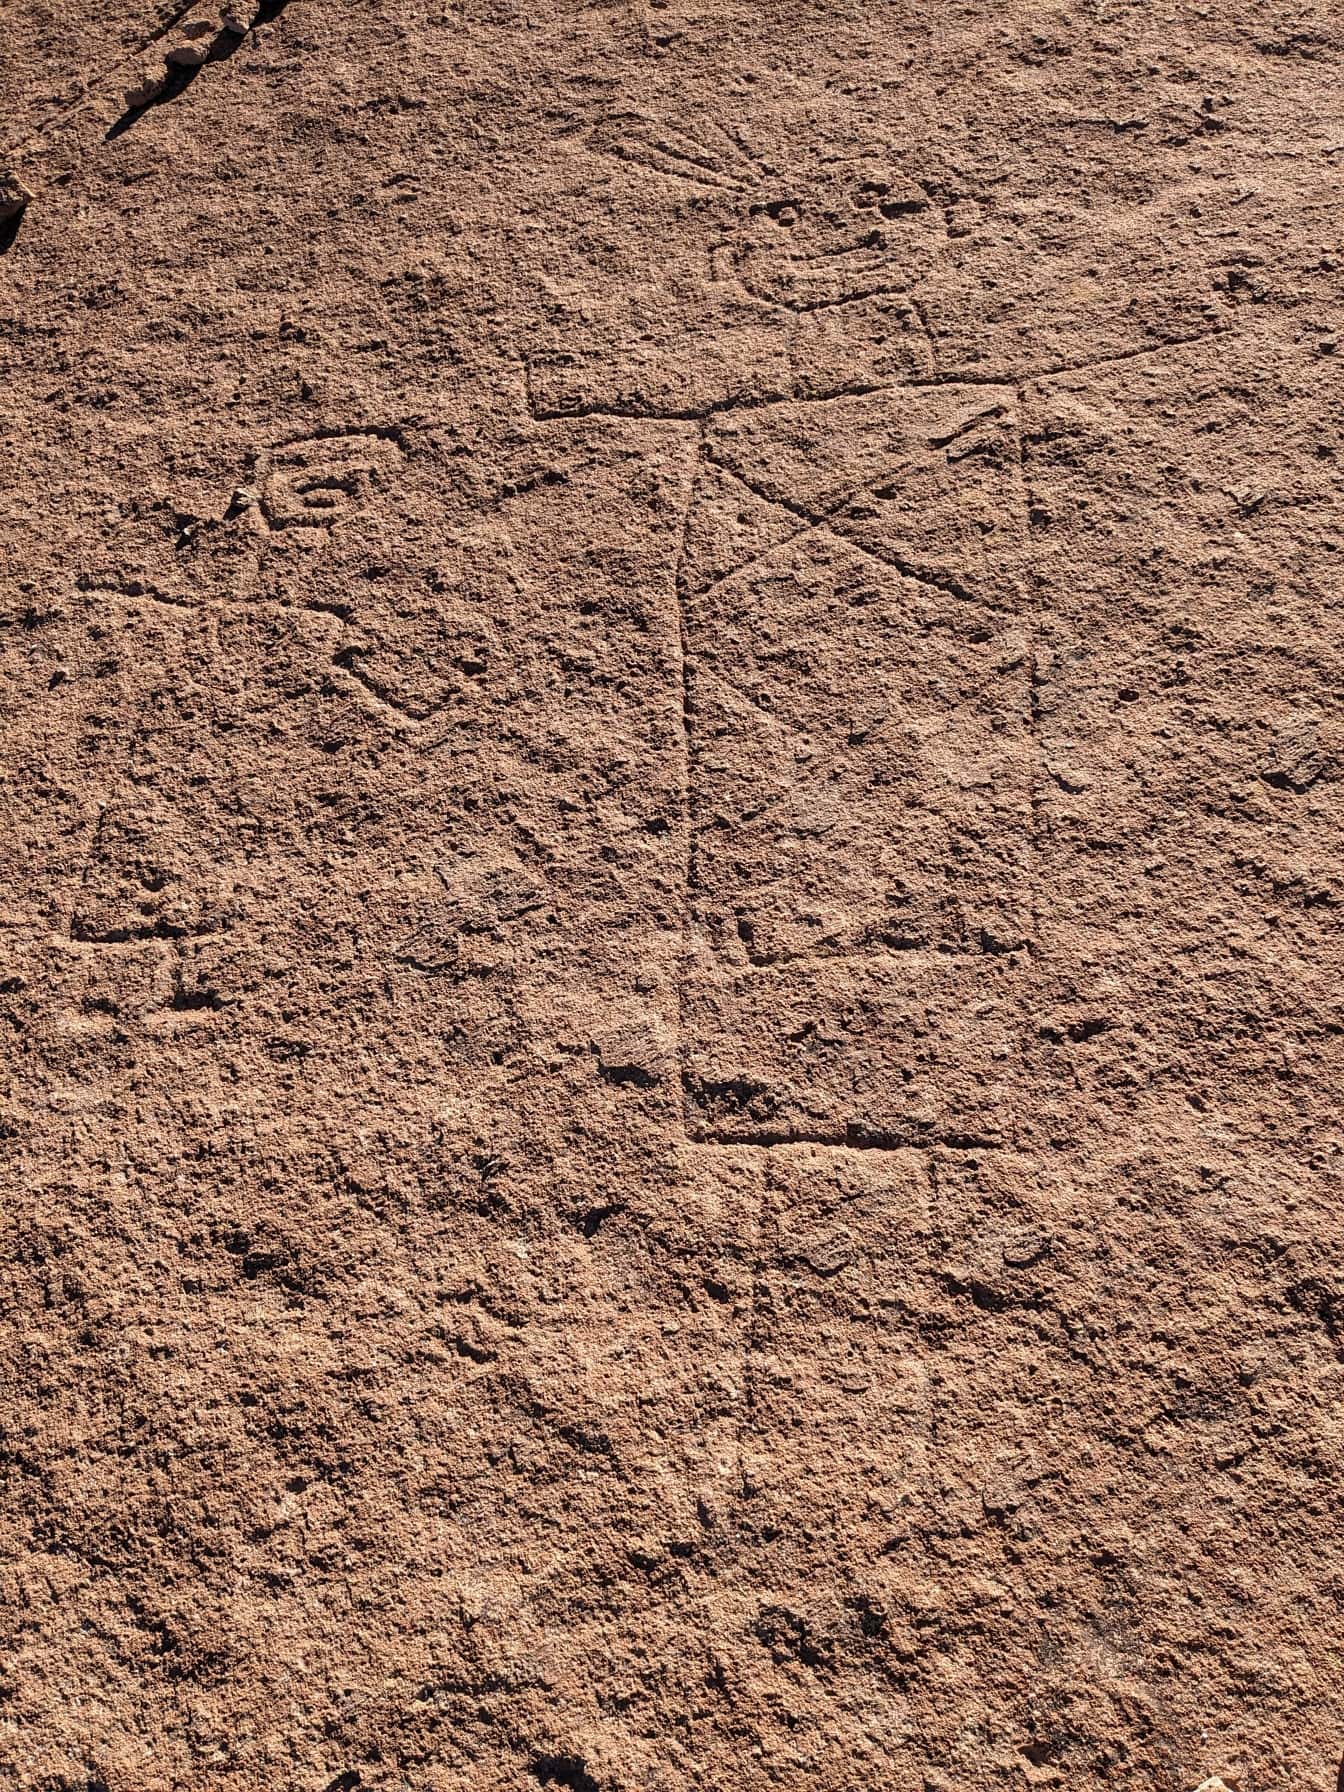 Alte naive Felszeichnungen, eine Petroglyphe, die den Nazca-Linien ähnelt